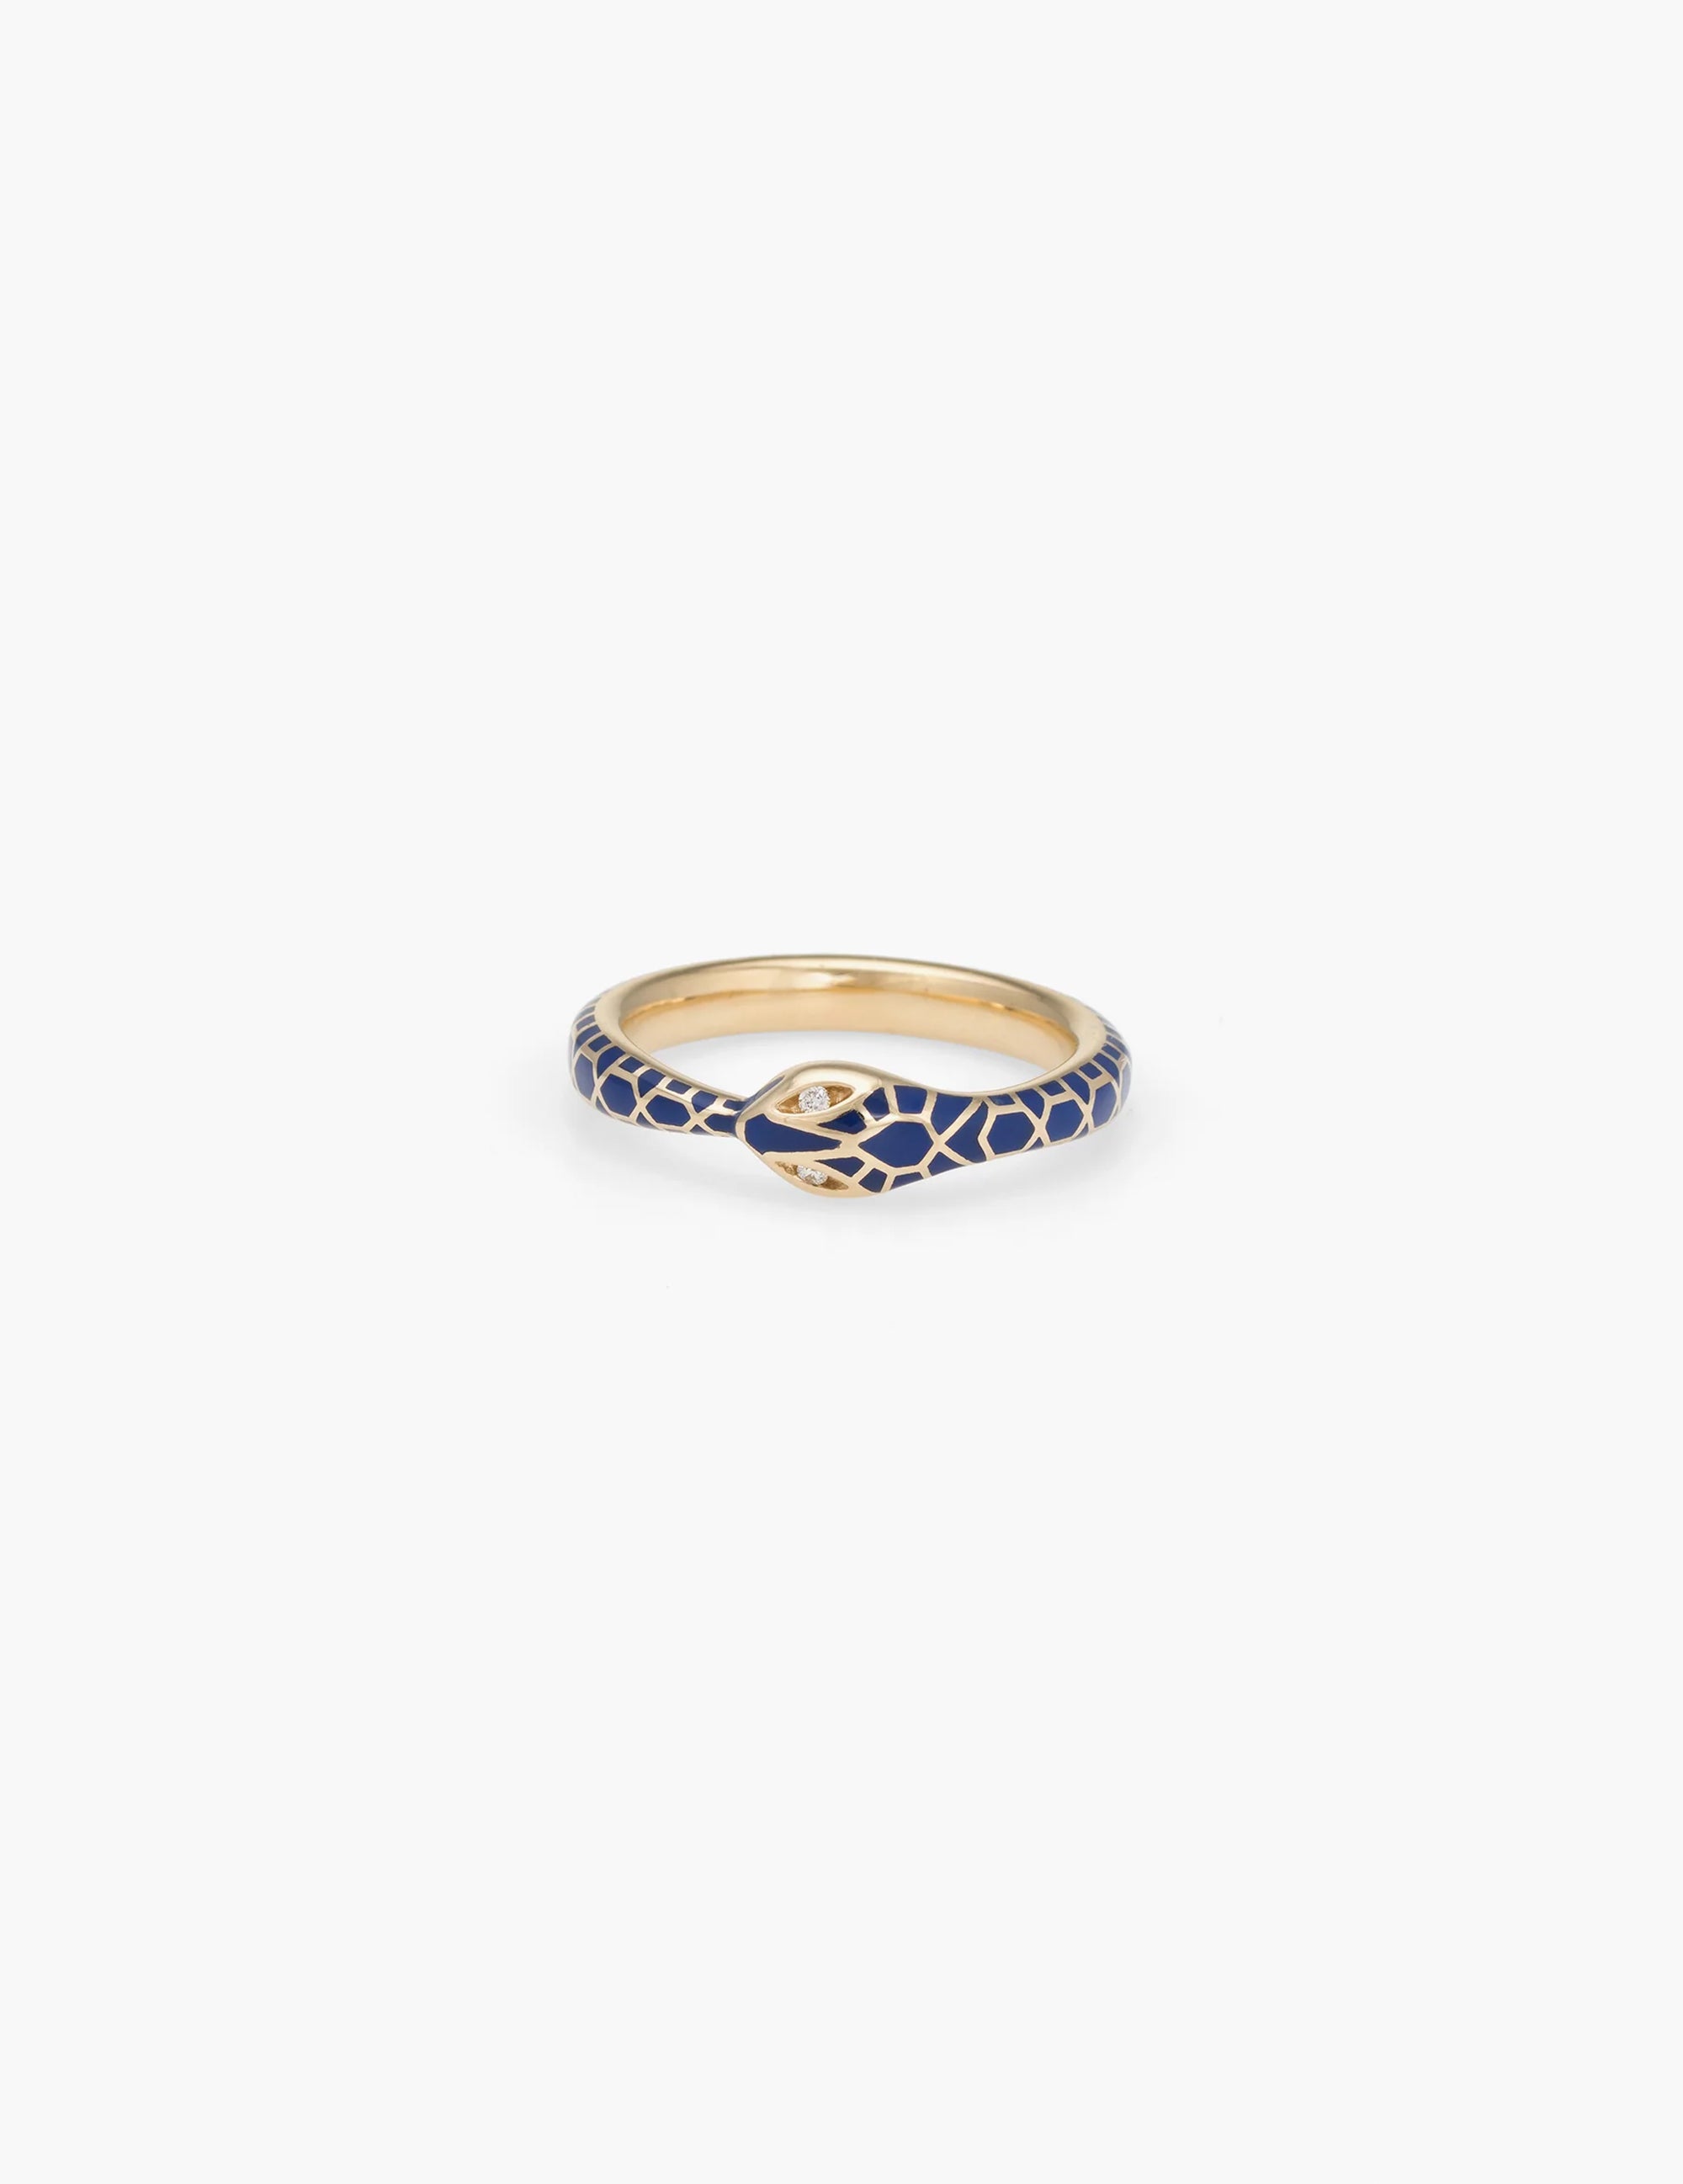 Blue Enamel Ouroboros Ring with Diamond Eyes